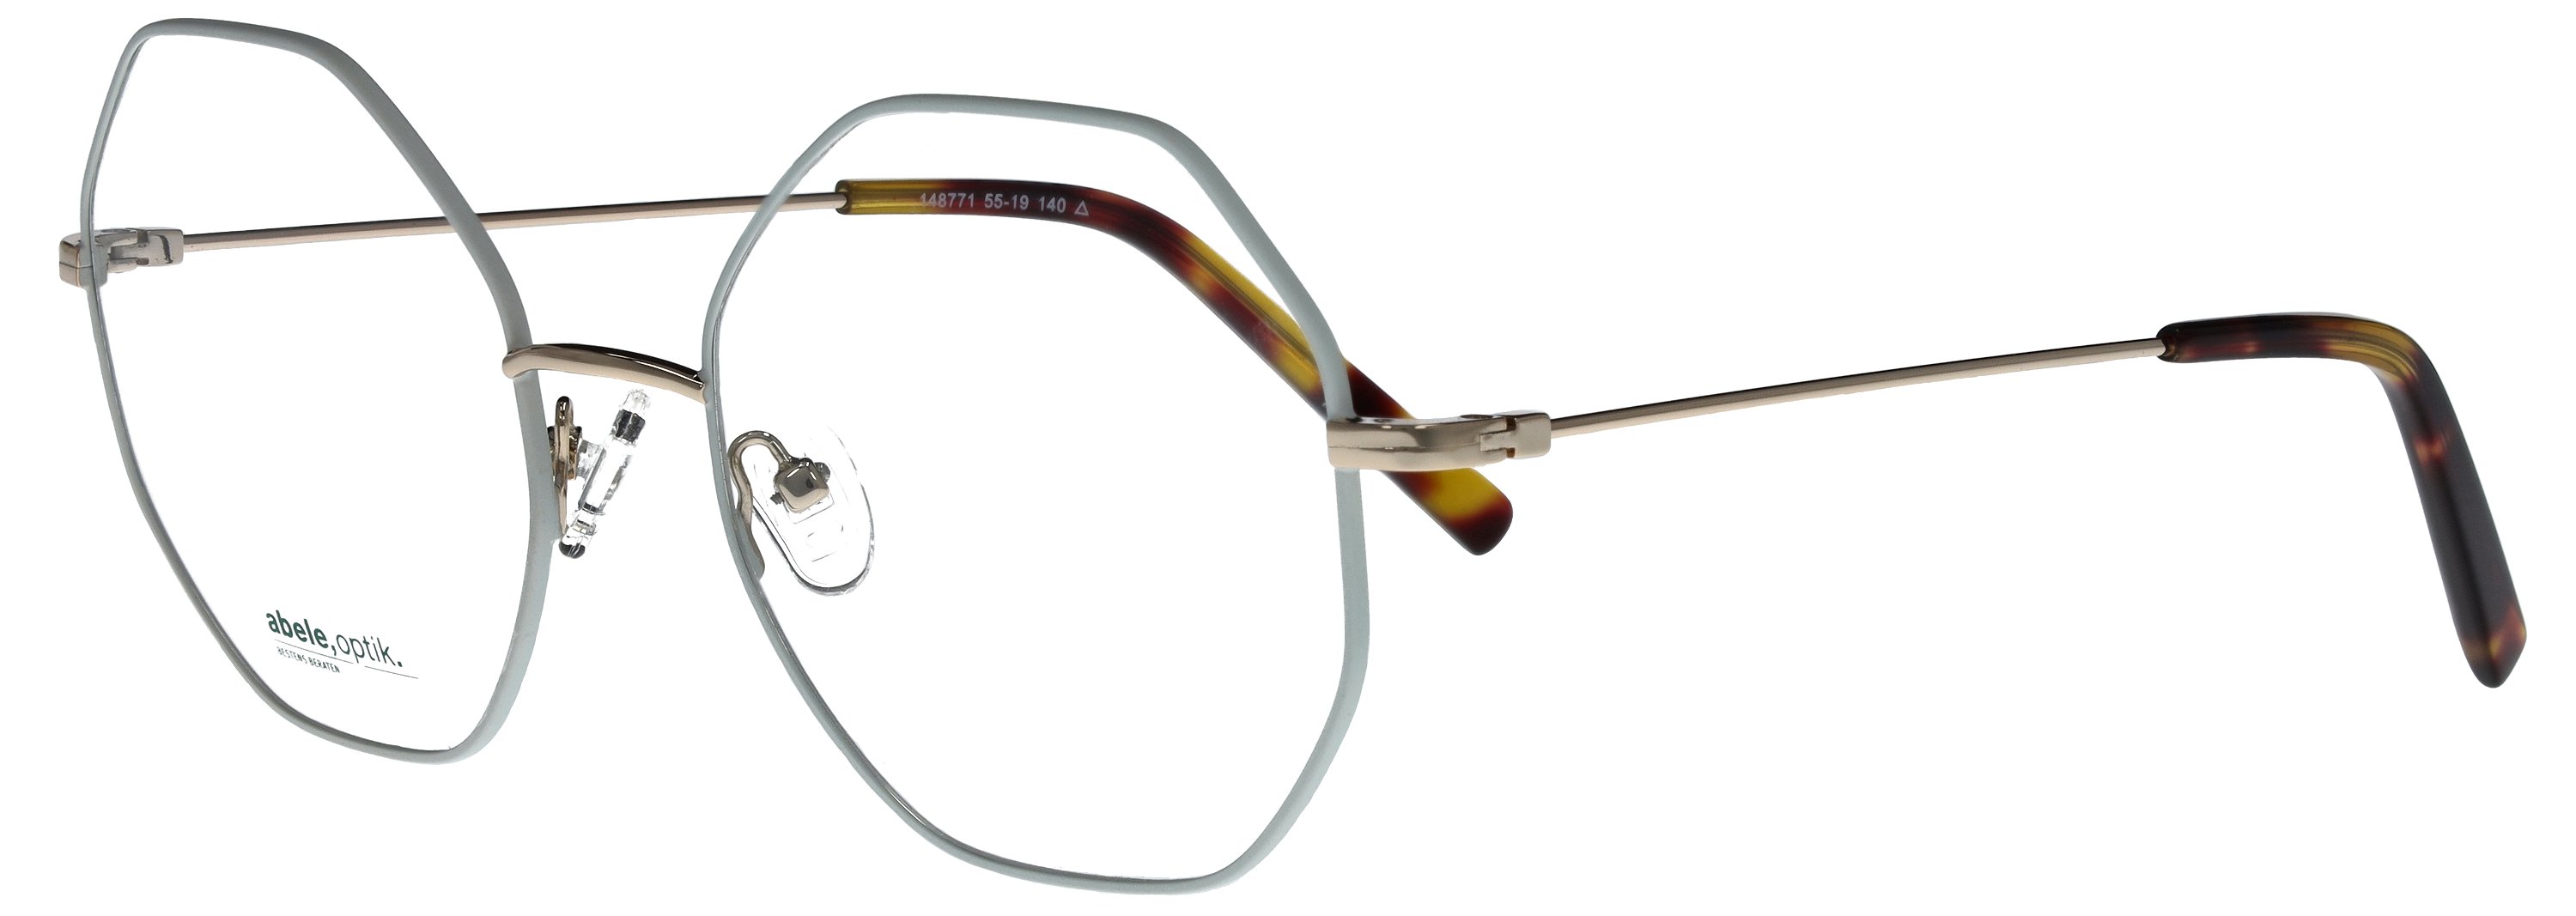 Das Bild zeigt die Korrektionsbrille 148771 von der Marke Abele Optik in silber.